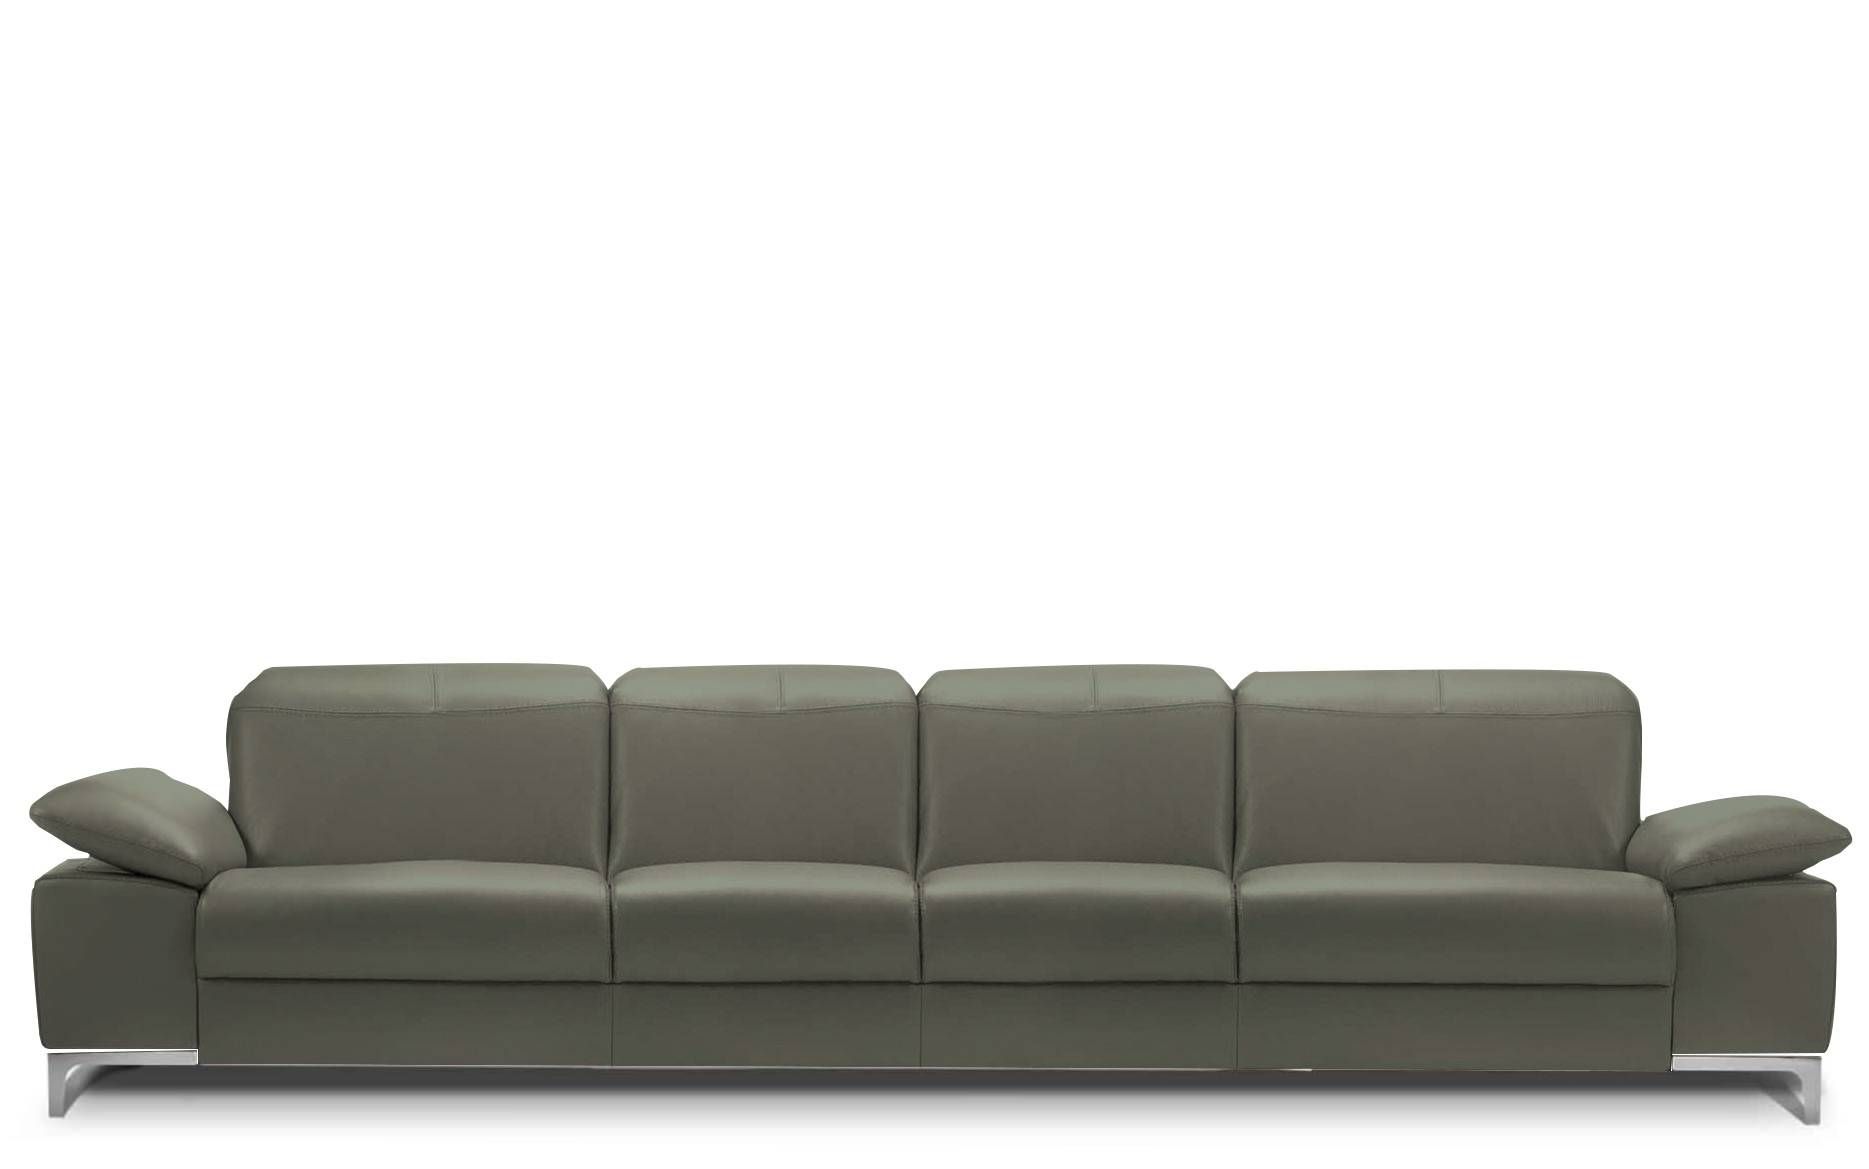 Rom Chronos 4 Seater Leather Sofa | Buy At Kontenta Regarding 4 Seat Leather Sofas (View 4 of 30)